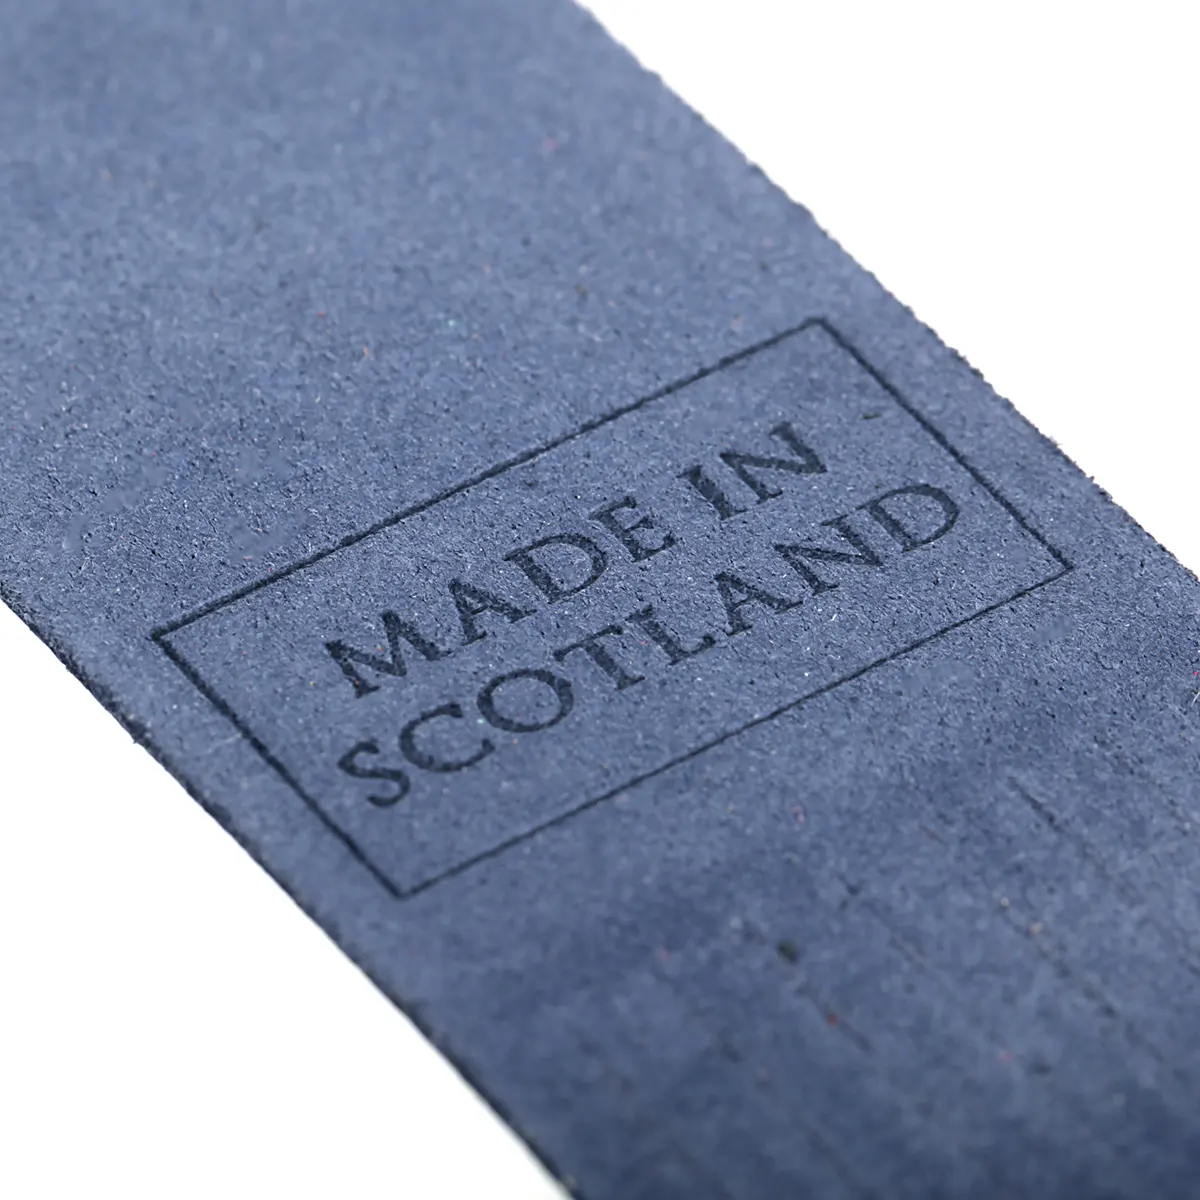 Edinburgh - Lesezeichen aus Leder in Blau - Made in Scotland